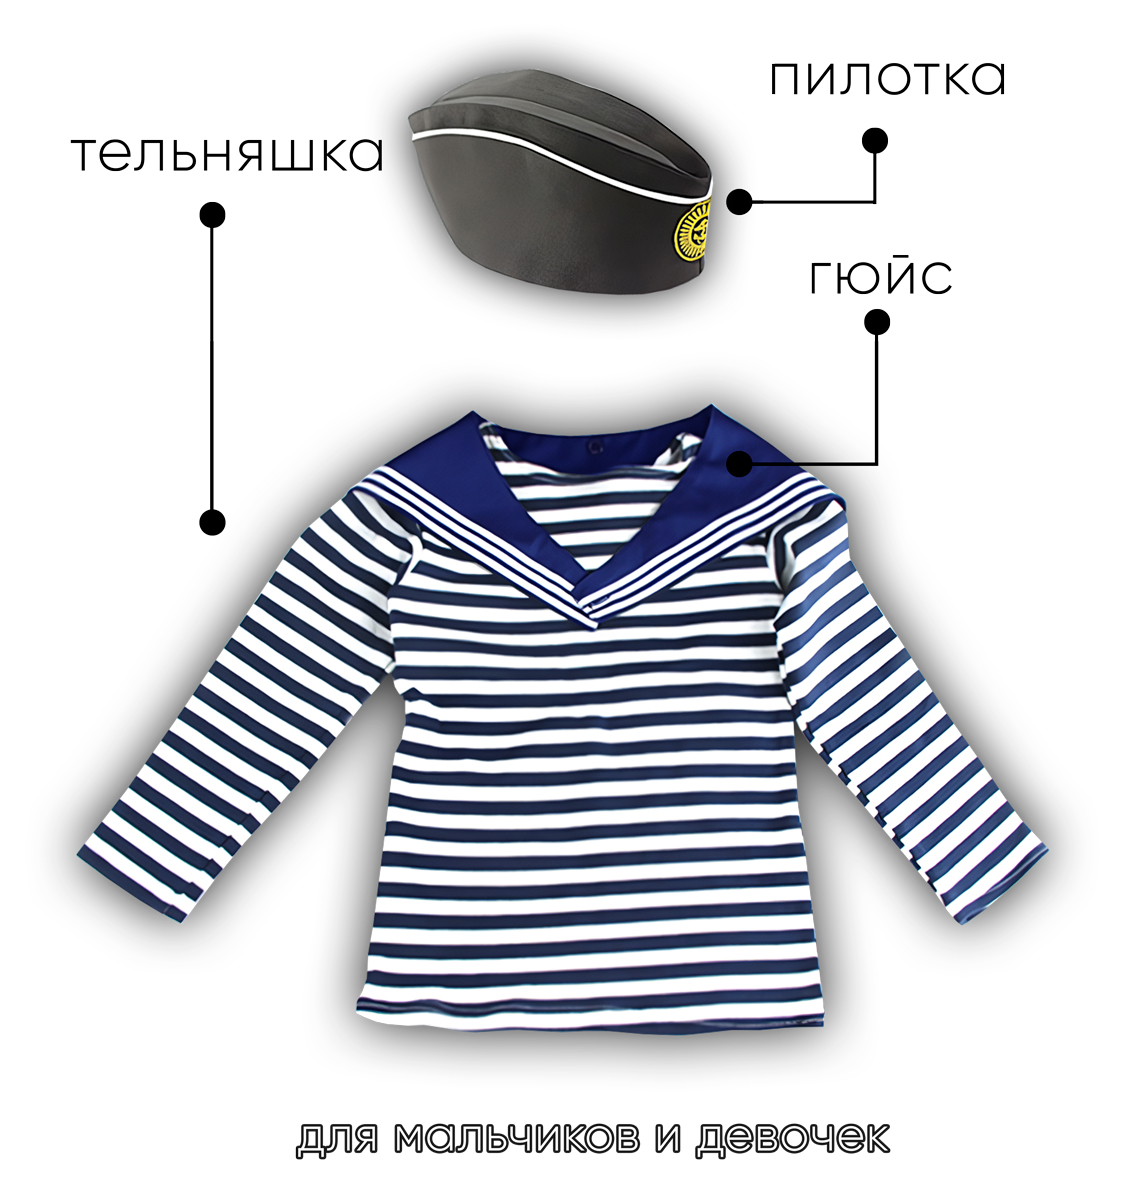 Детский набор матроса для утренника (тельняшка: 30 размер, пилотка детская: 54 размер (на рост 110-116, до 7 лет) и гюйс детский синий)